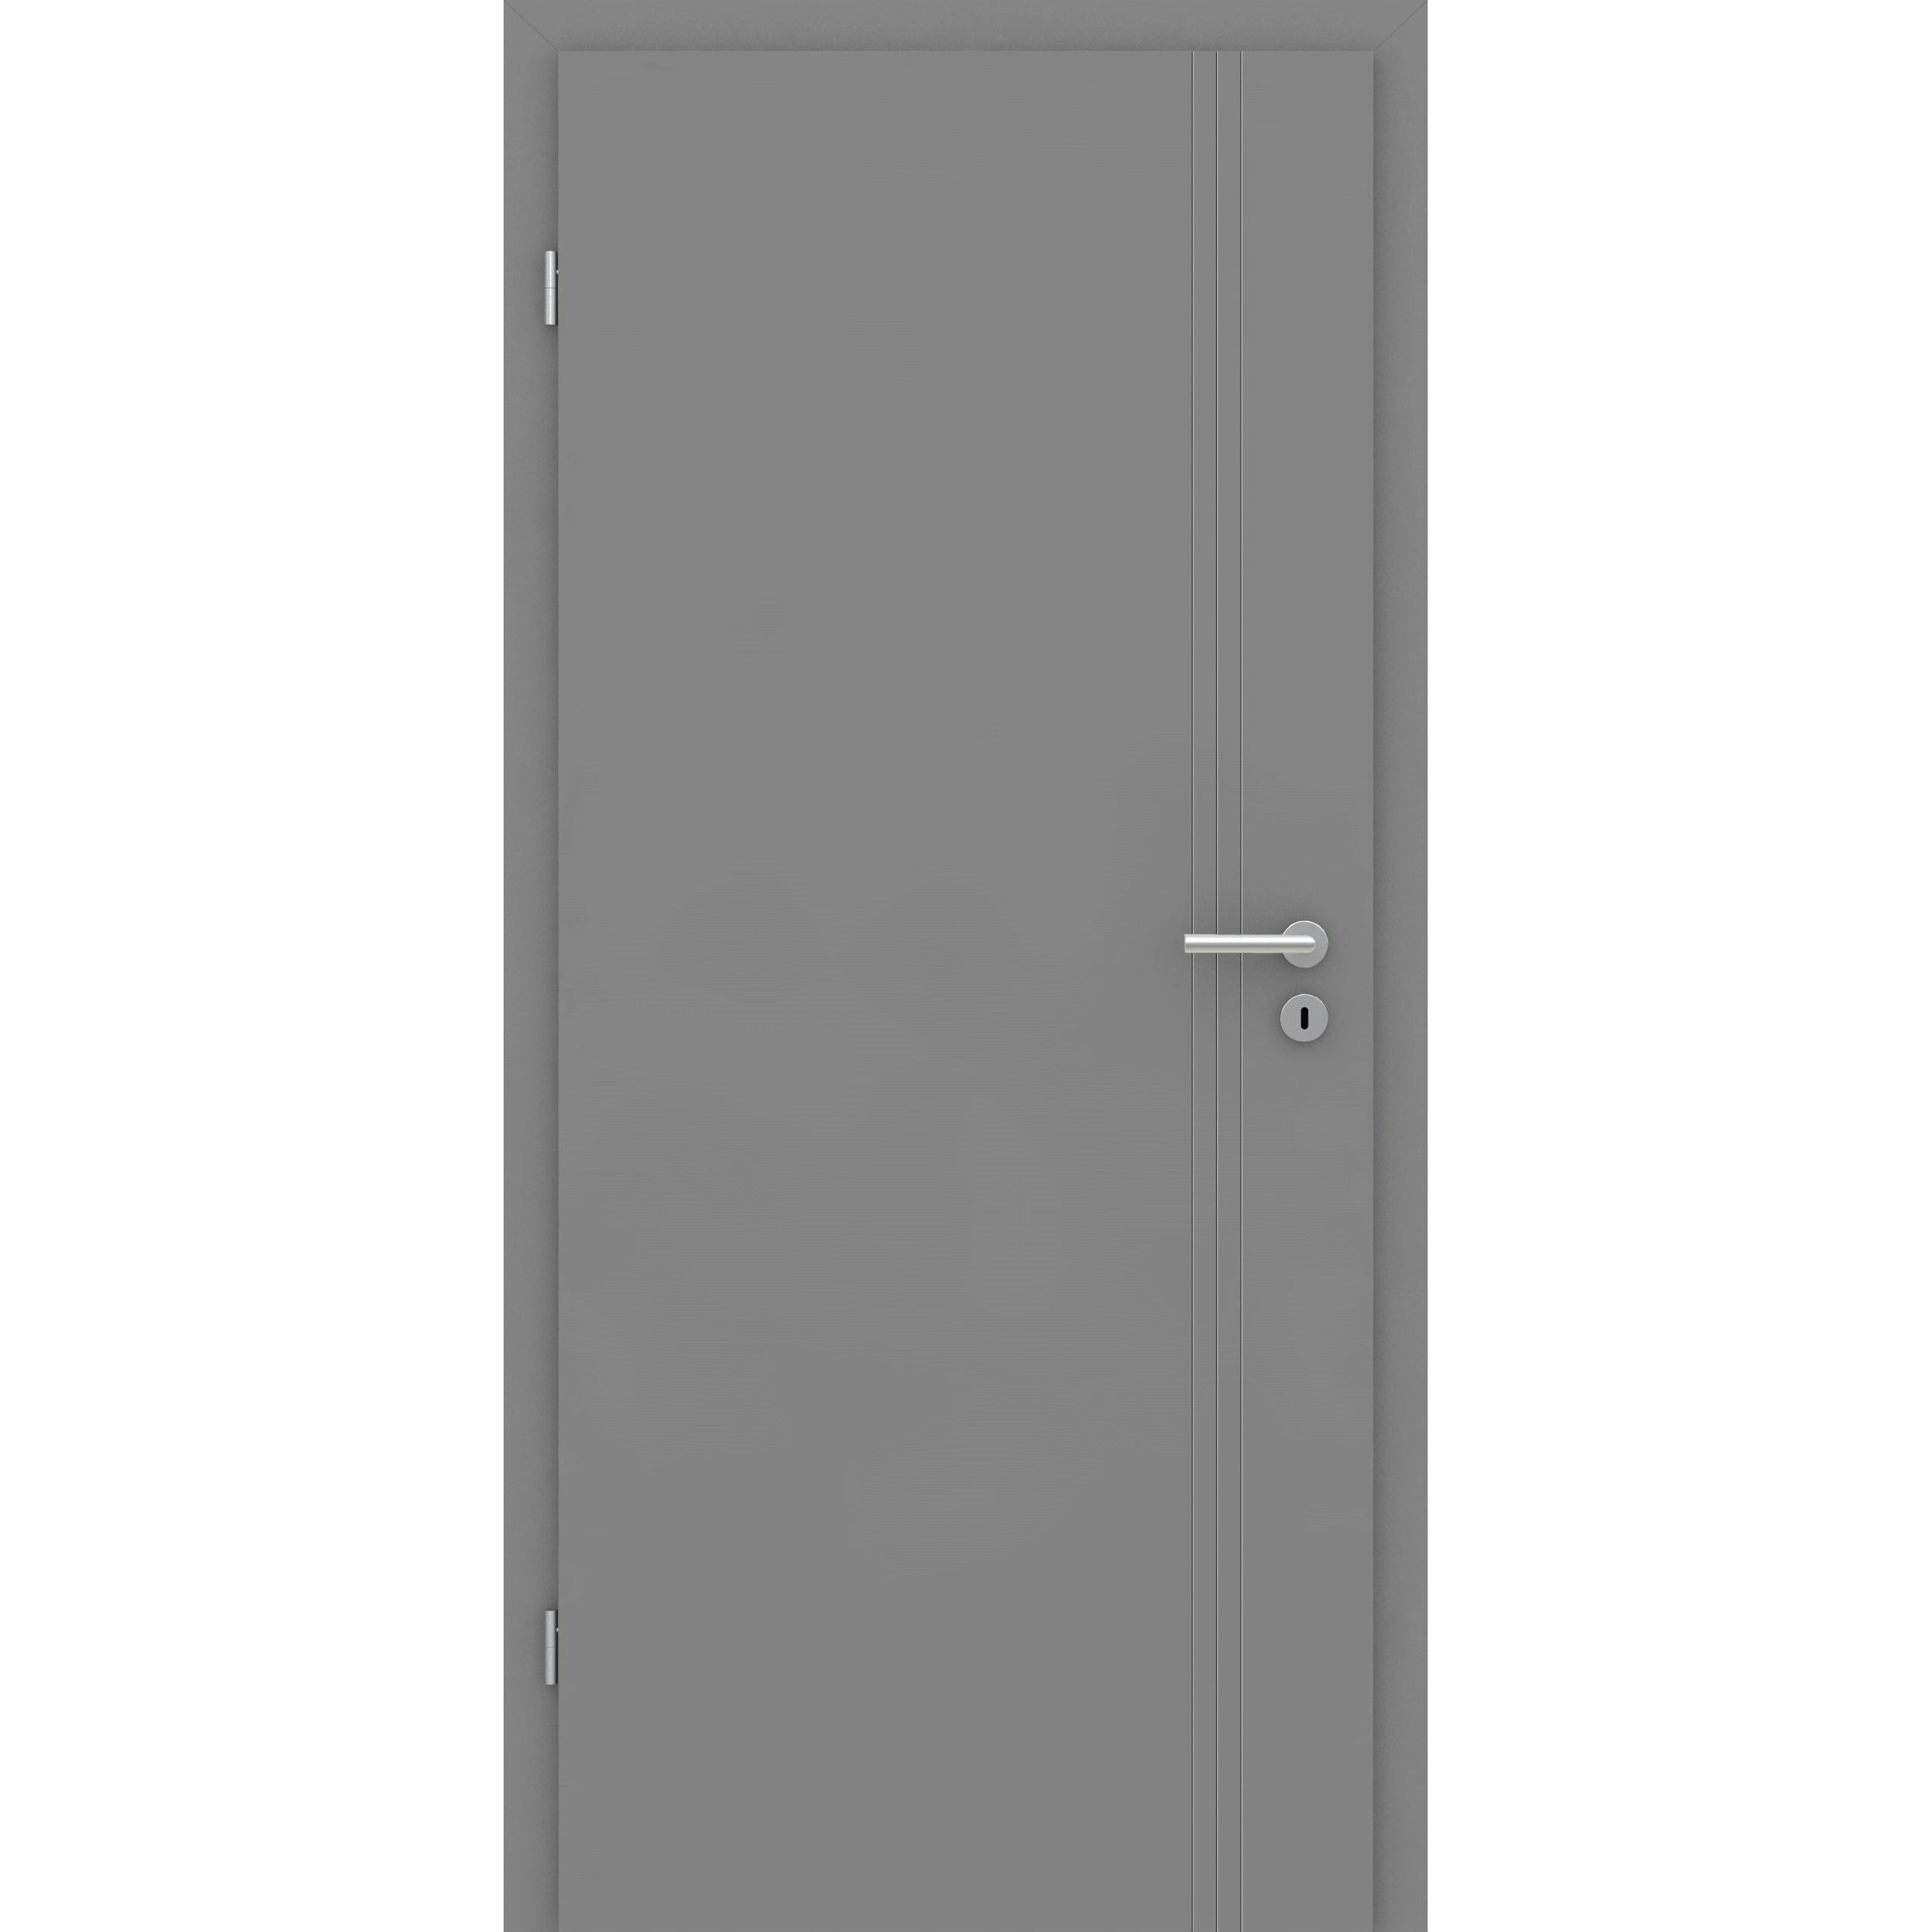 Zimmertür grau 3 Rillen aufrecht Schlosseite Designkante - Modell Designtür VS37